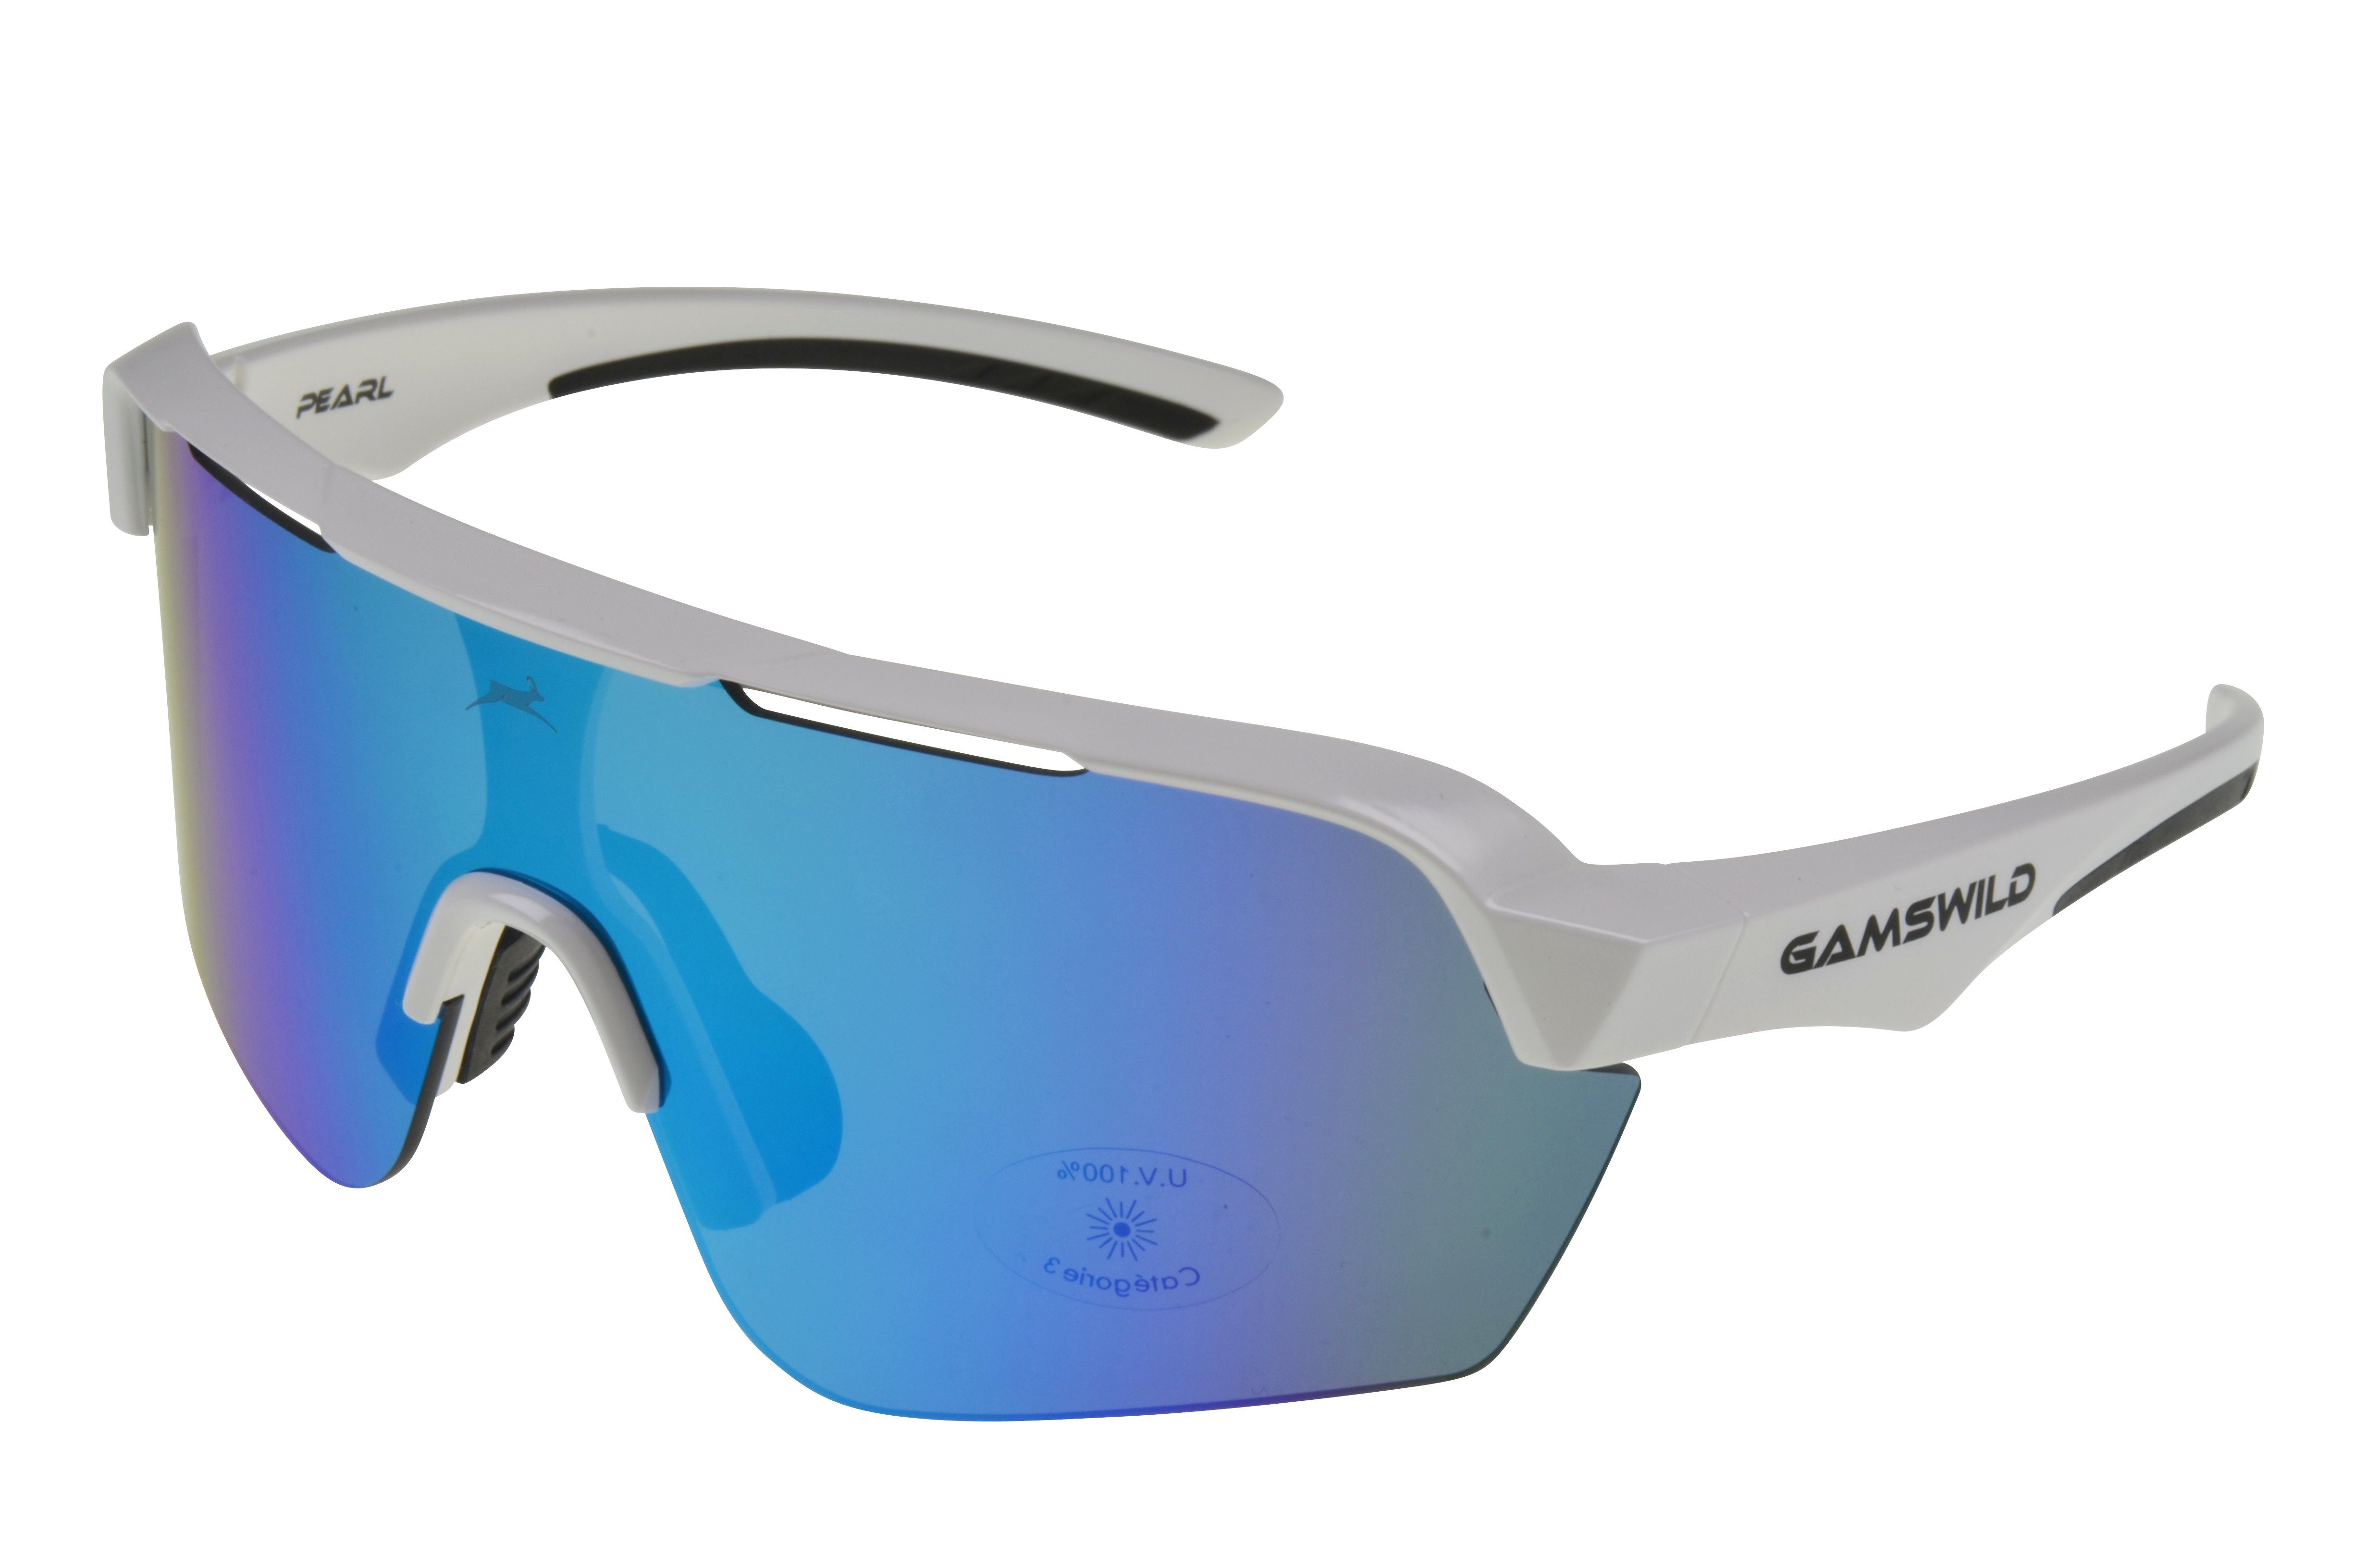 Damen Gamswild extra blau, Unisex, weiß_blau cat.3 pink, Fahrradbrille schwarz, Skibrille mintgrün WS7138 große Sonnenbrille Scheibe, Sportbrille Herren weiß,